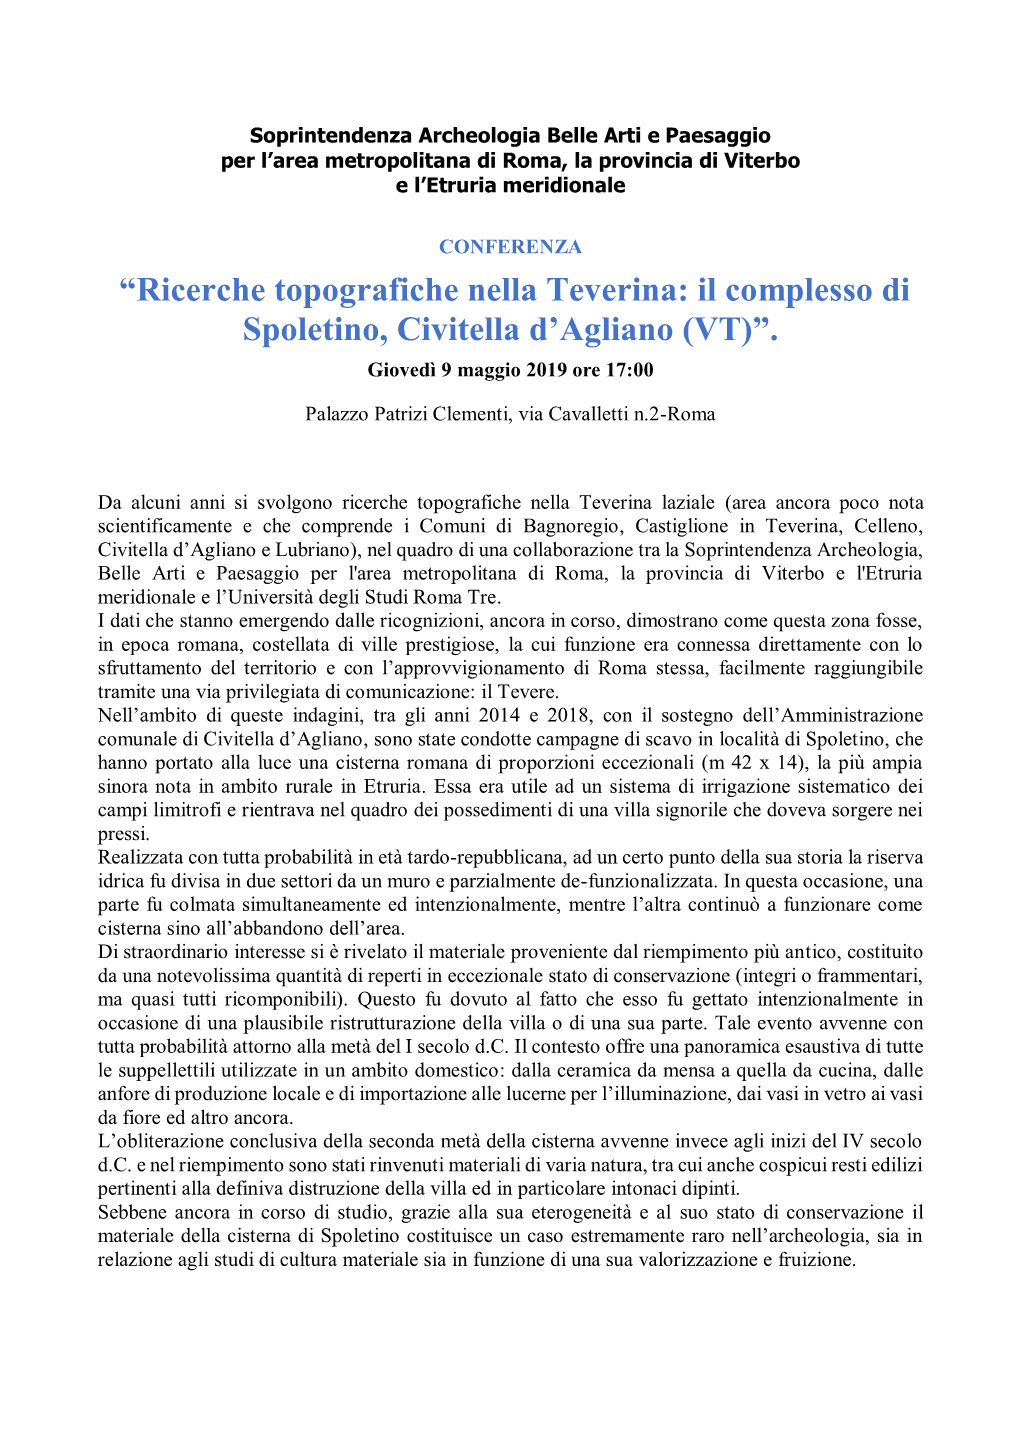 “Ricerche Topografiche Nella Teverina: Il Complesso Di Spoletino, Civitella D'agliano (VT)”